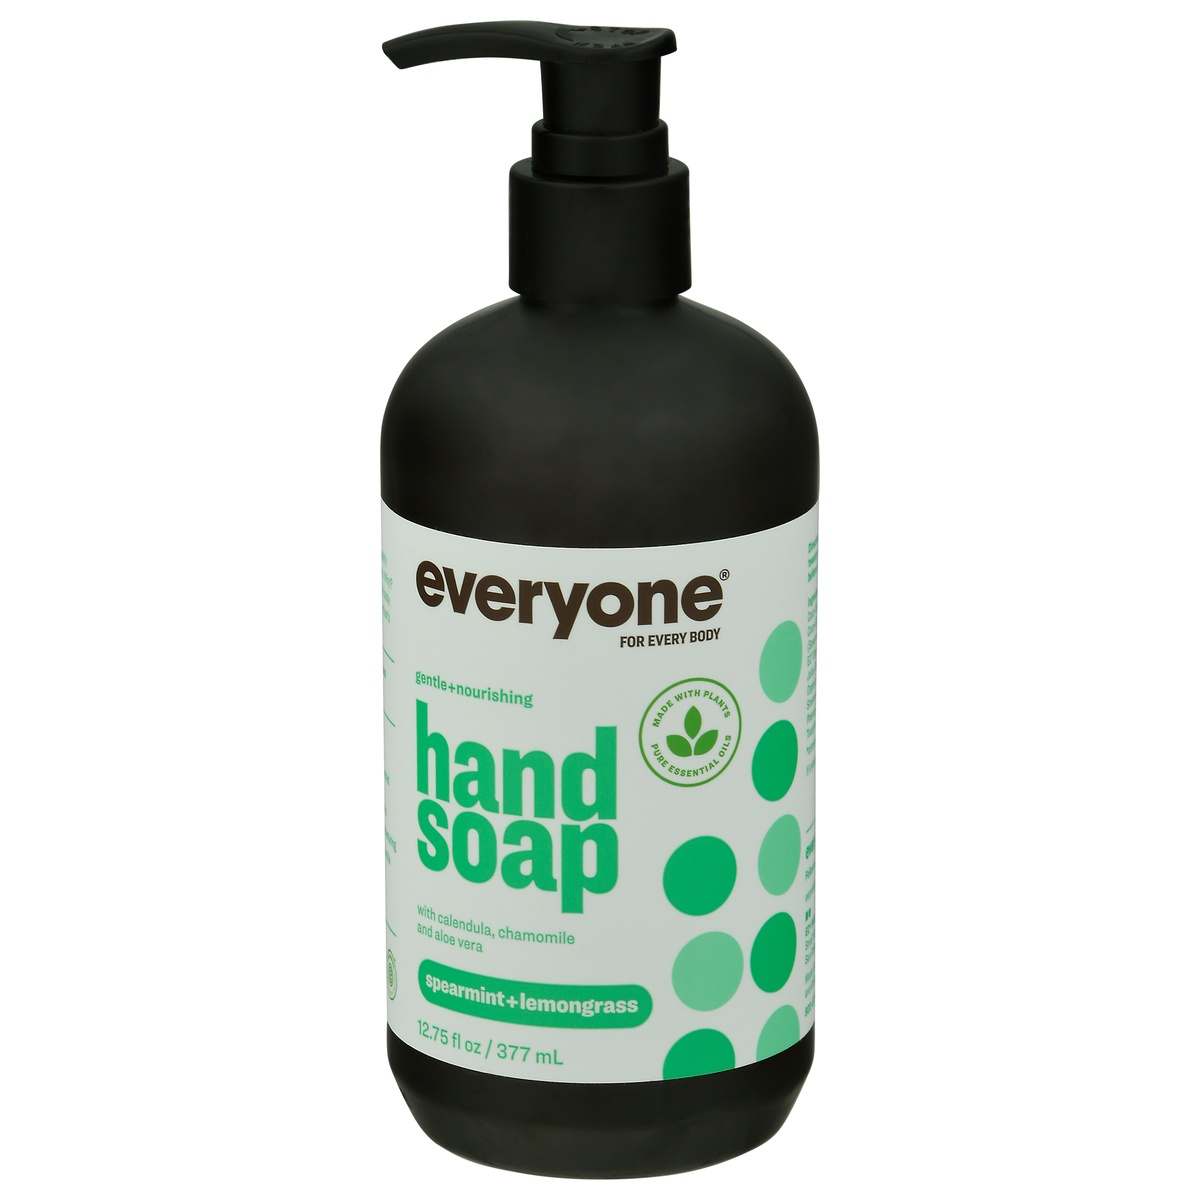 slide 1 of 1, Everyone Hand Soap - Spearmint and Lemongrass, 12.75 fl oz